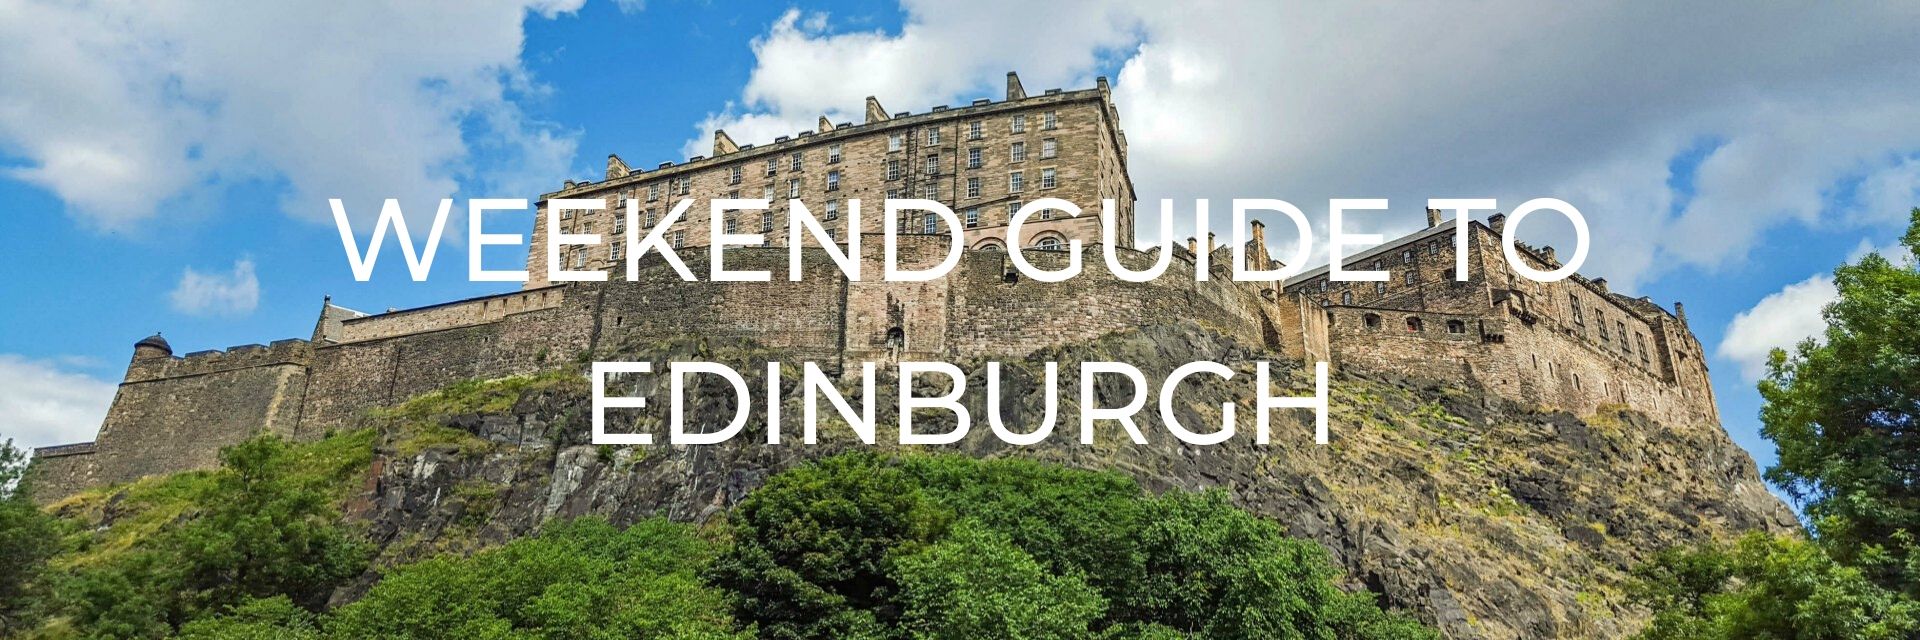 Weekend Guide to Edinburgh Desktop Header